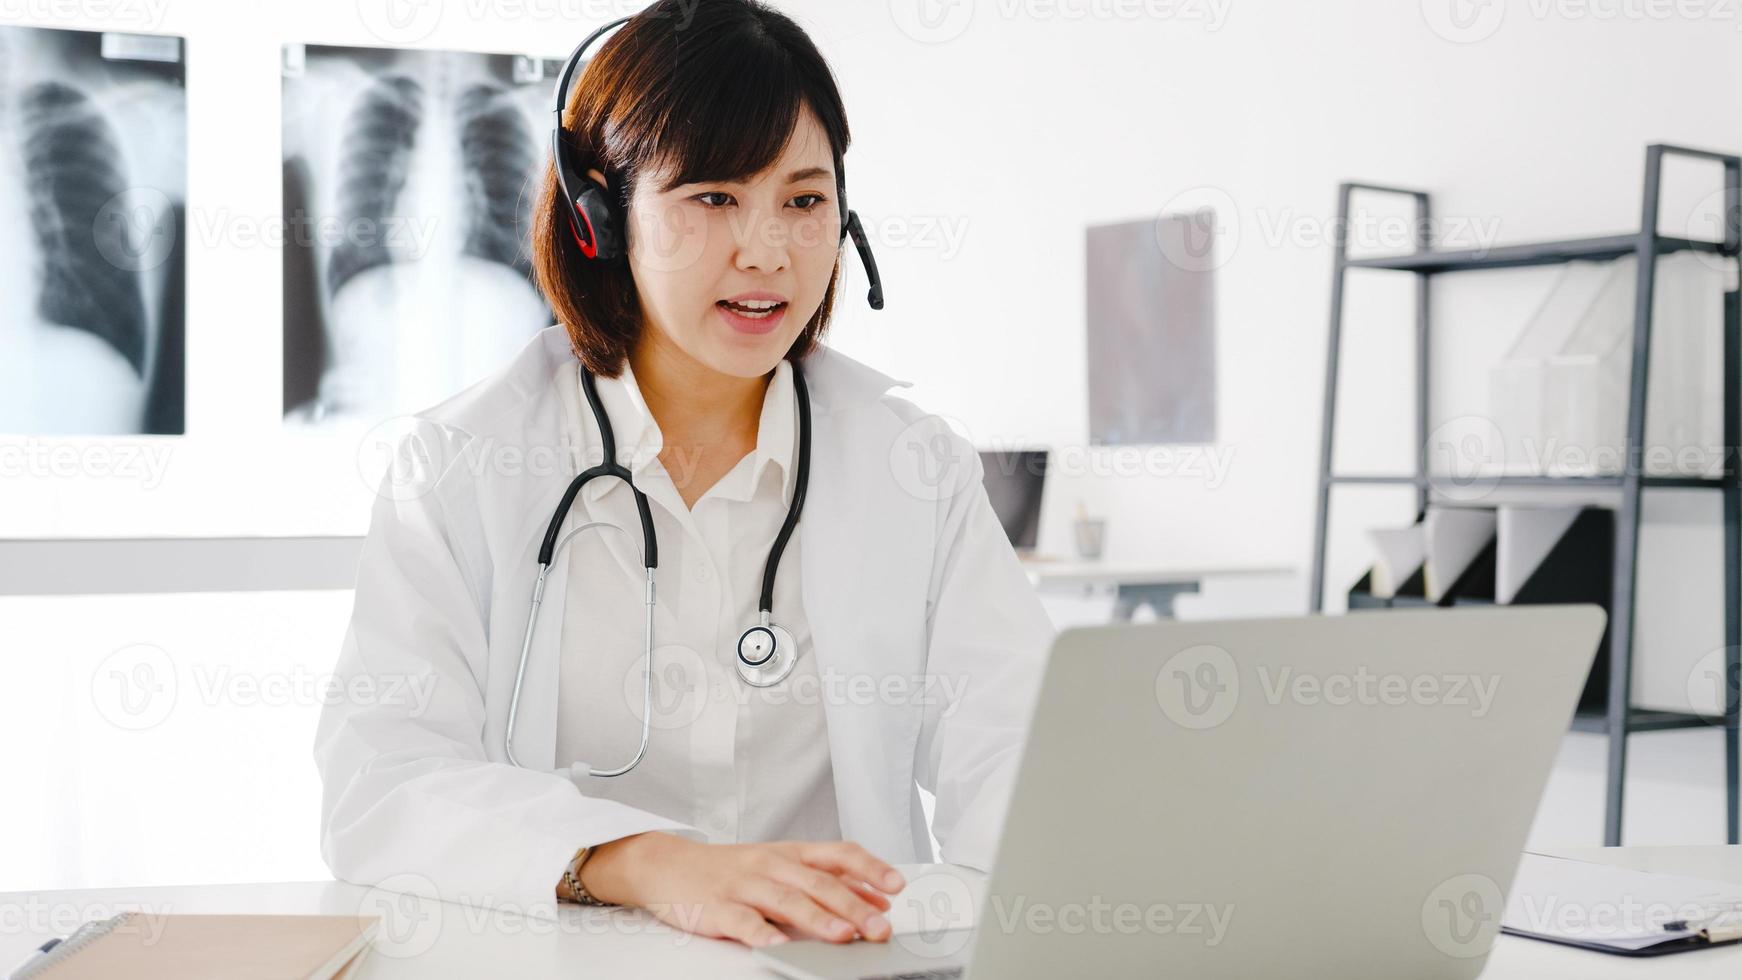 jeune femme médecin asiatique en uniforme médical blanc avec stéthoscope utilisant un ordinateur portable parlant par vidéoconférence avec un patient au bureau dans une clinique de santé ou un hôpital. concept de conseil et de thérapie photo